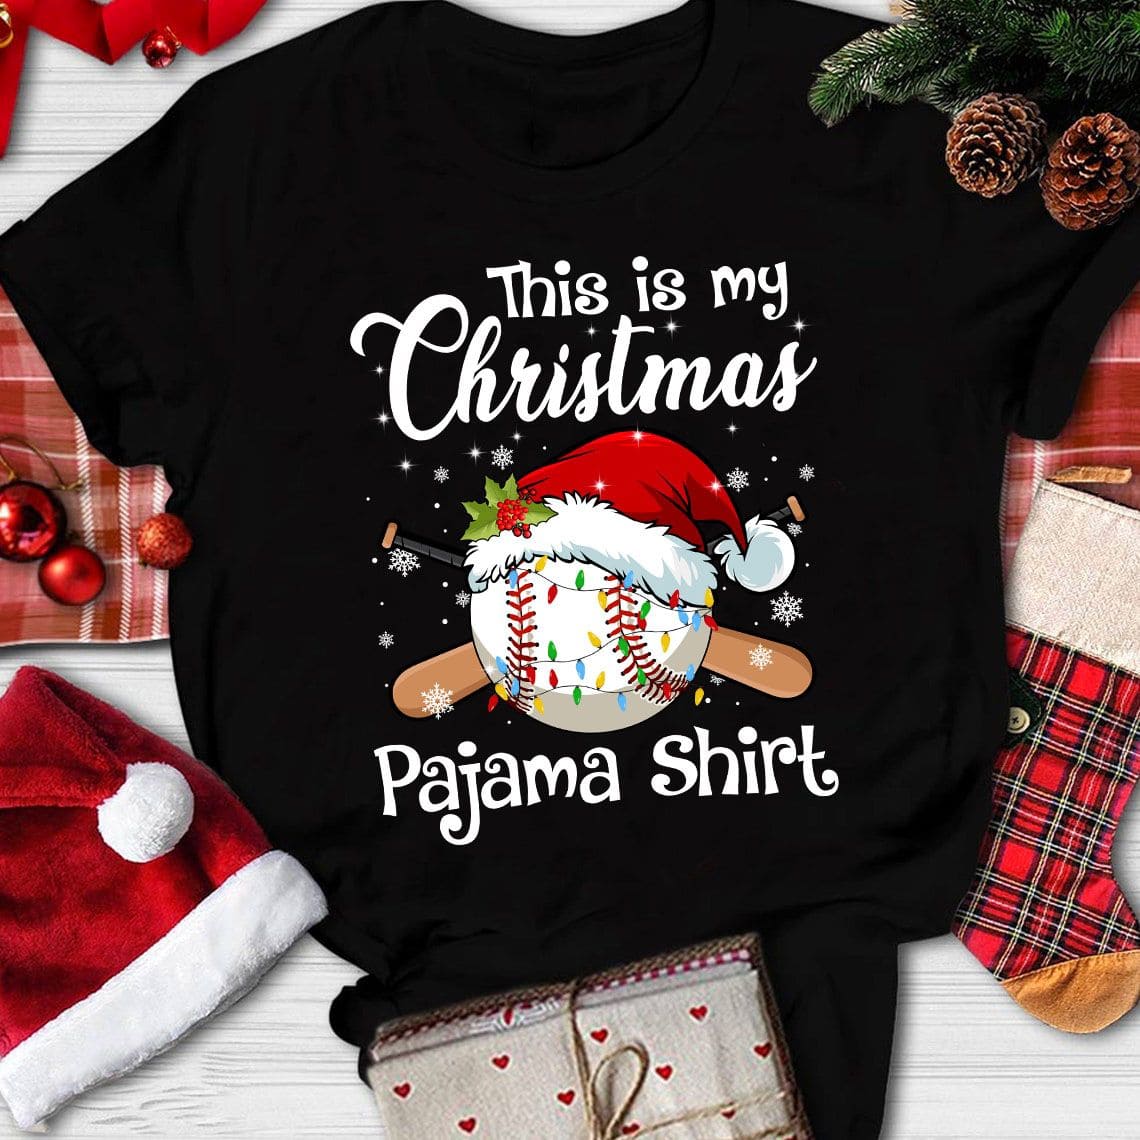 This is my Christmas pajama shirt - Baseball and Santa hat, Christmas ugly sweater